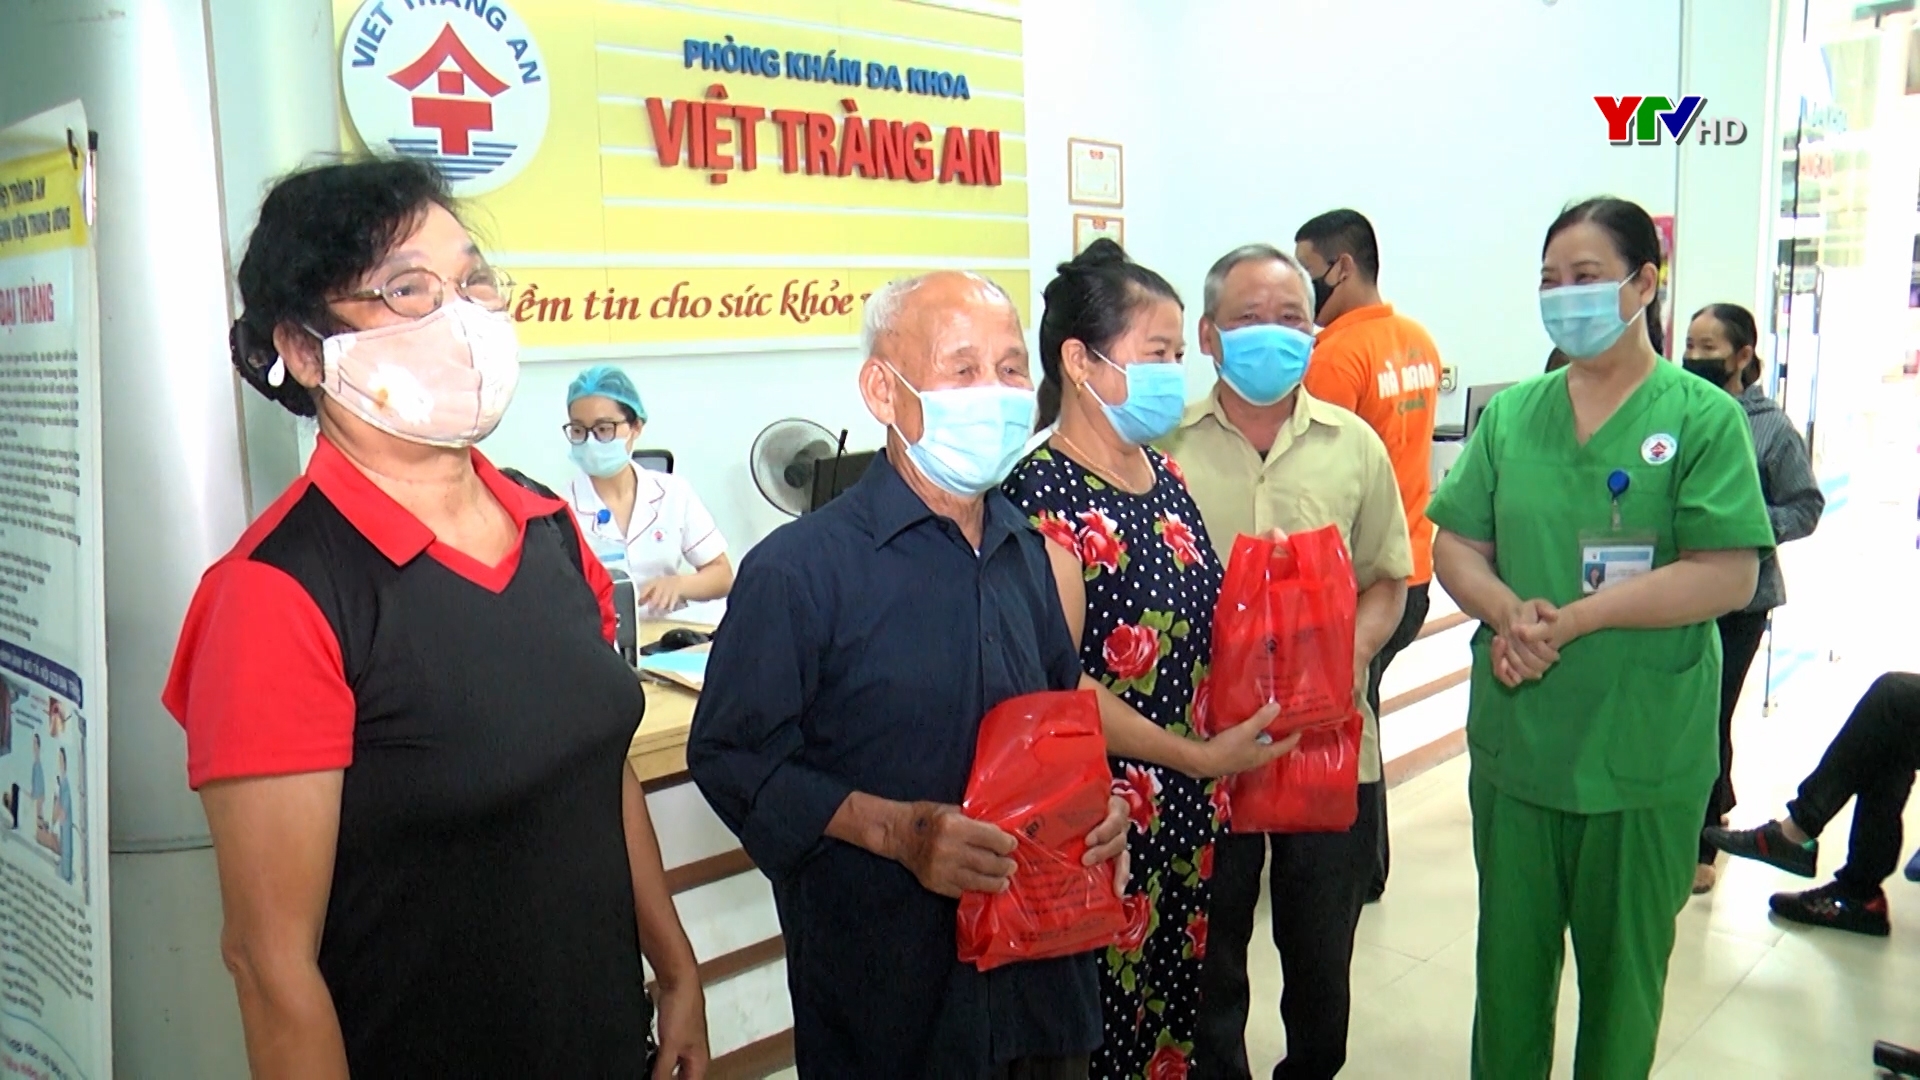 Phòng khám Đa khoa Việt Tràng An tặng quà cho người cao tuổi đến khám và điều trị